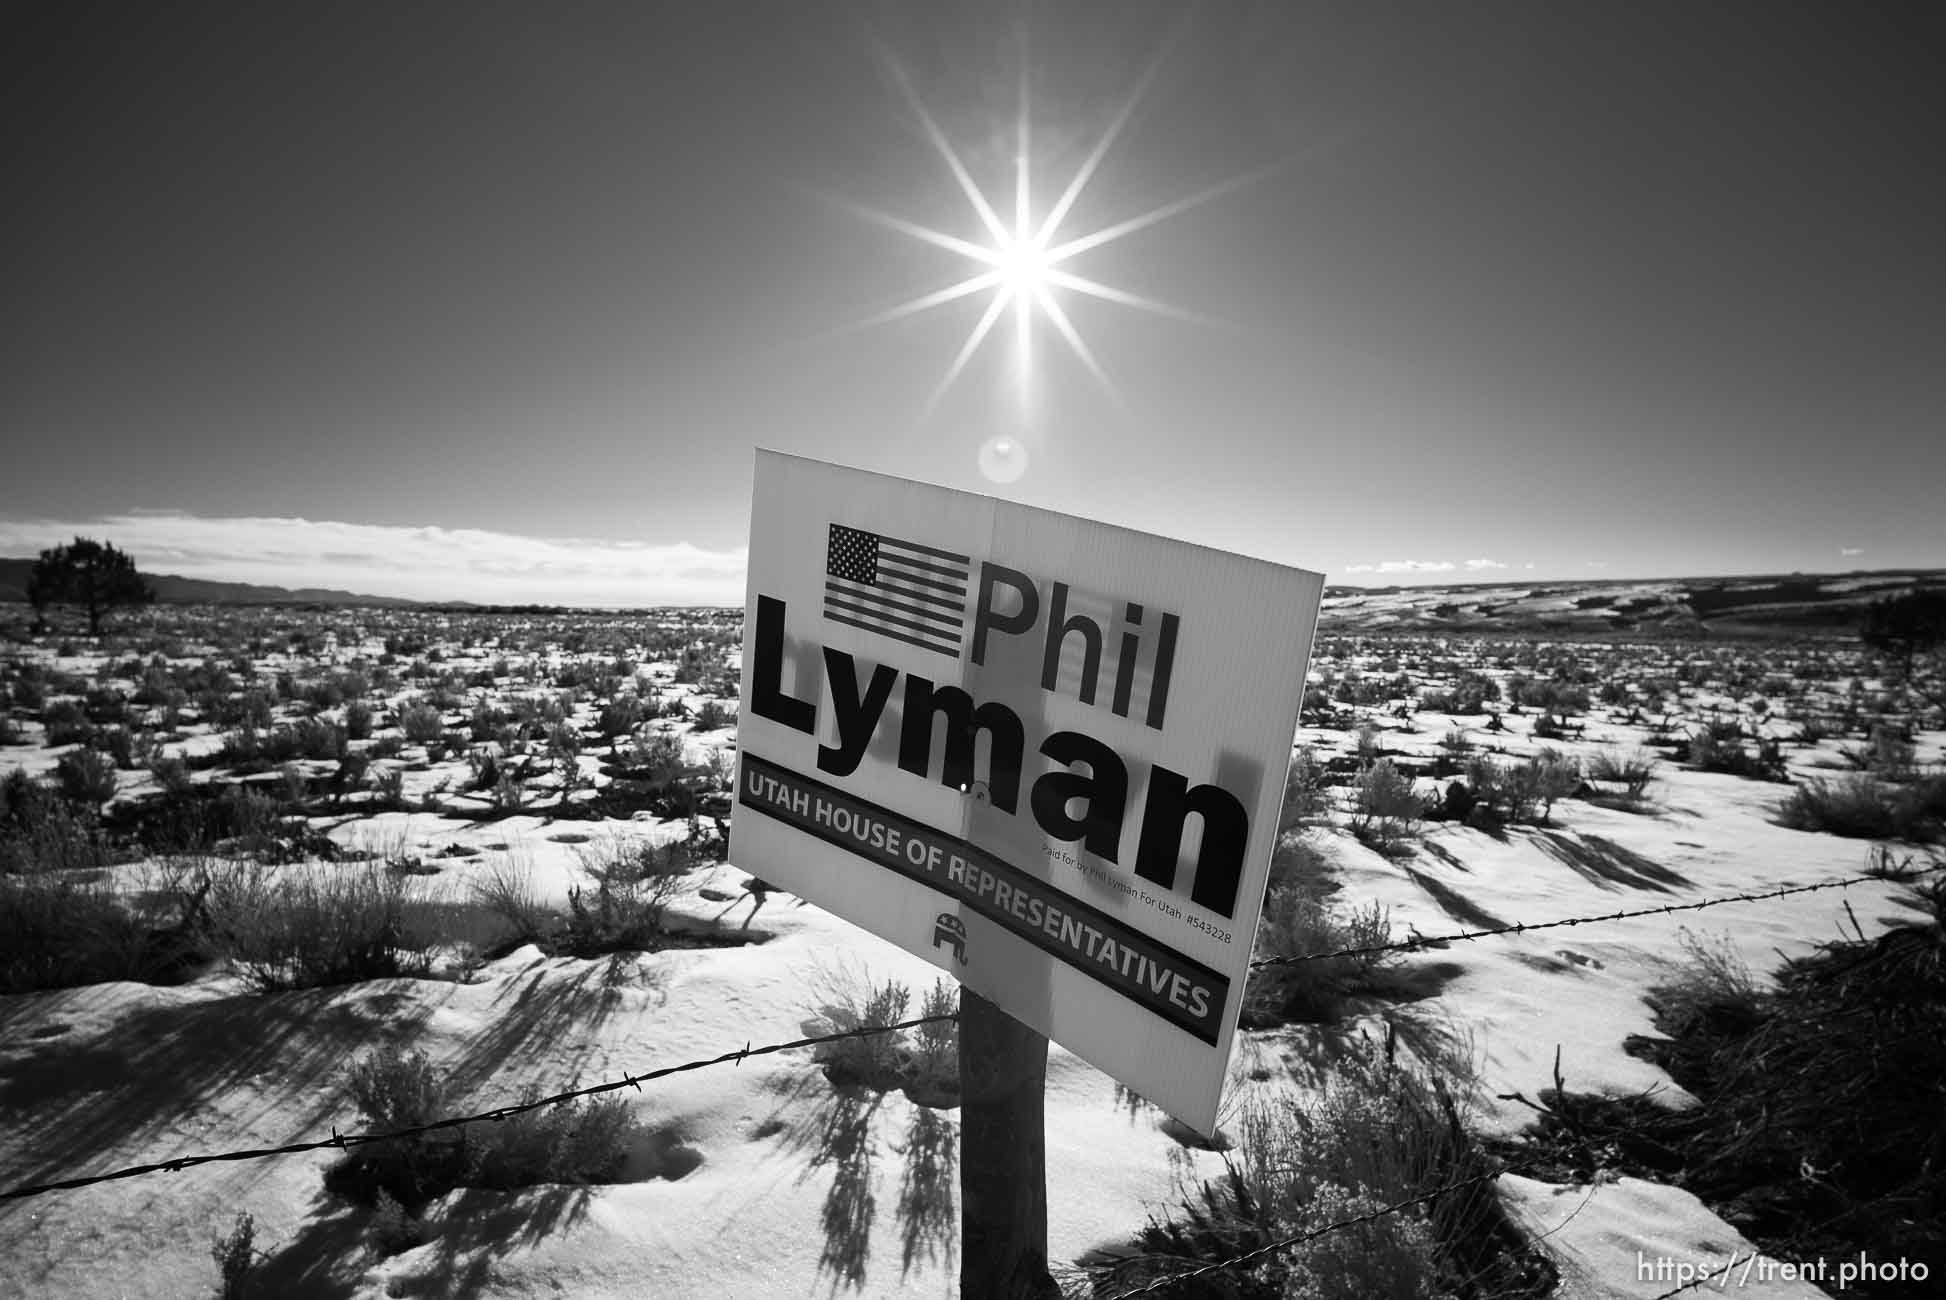 Phil Lyman